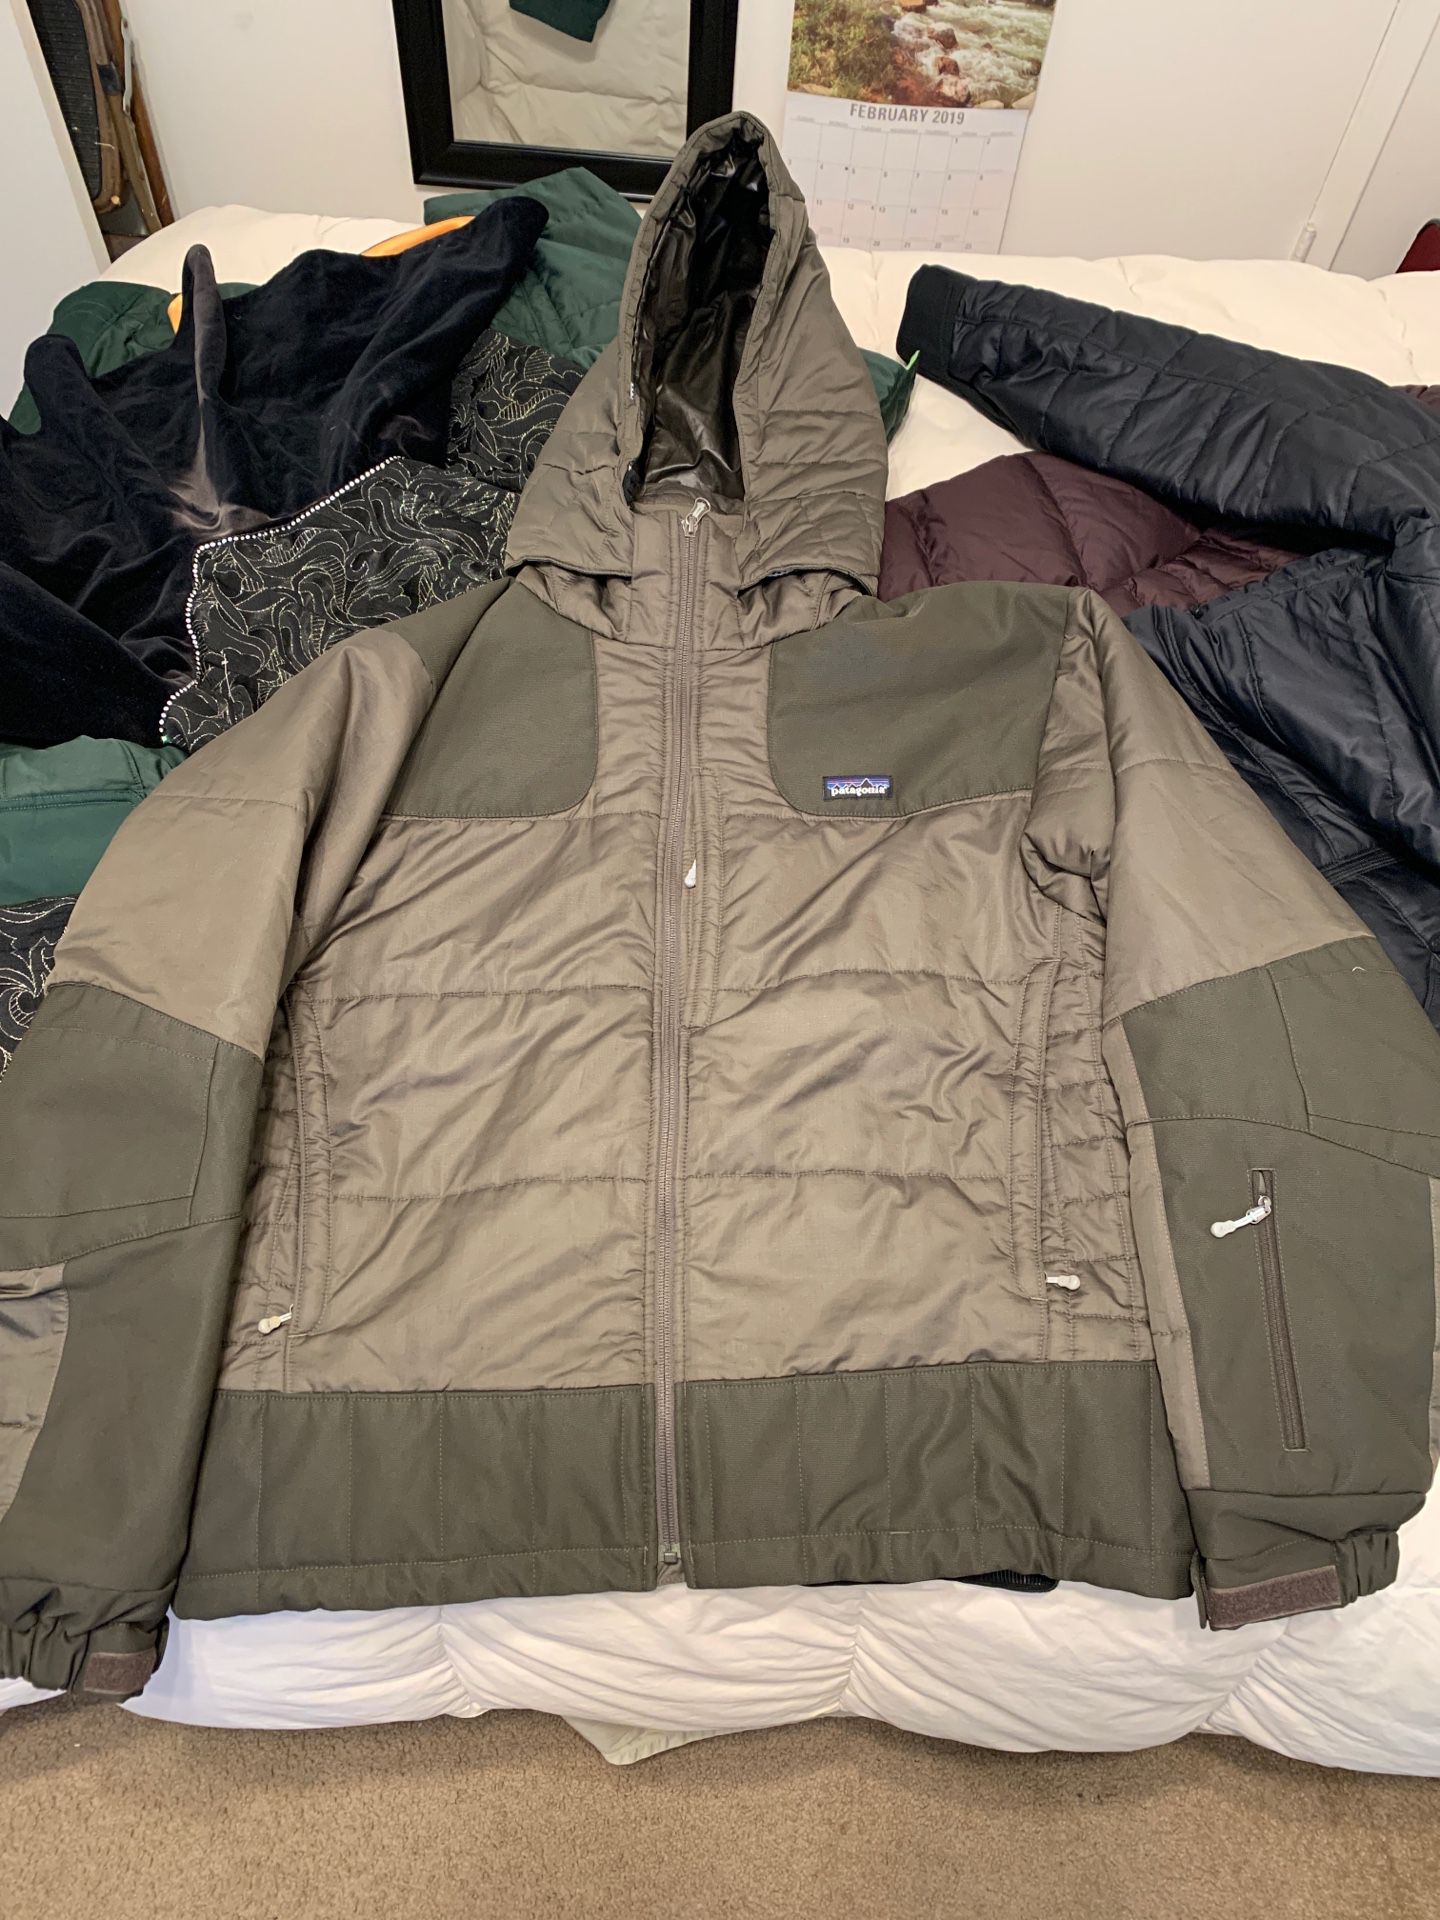 Patagonia jacket men’s size large